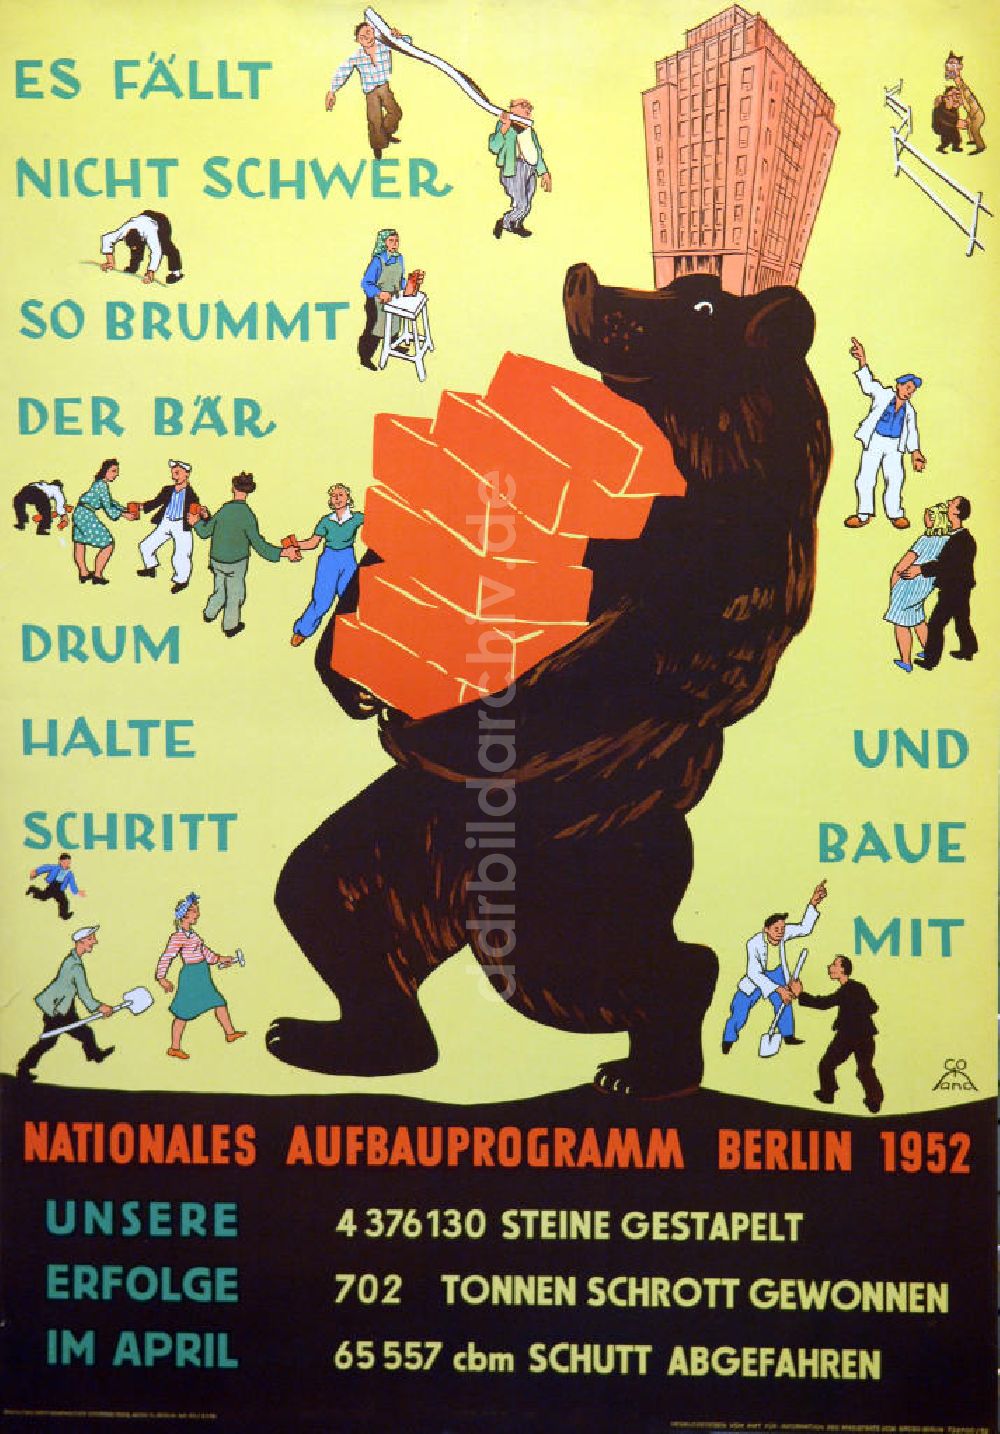 DDR-Fotoarchiv: Berlin - Plakat von Herbert Sandberg Nationales Aufbauprogramm Berlin 1952 aus dem Jahr 1952